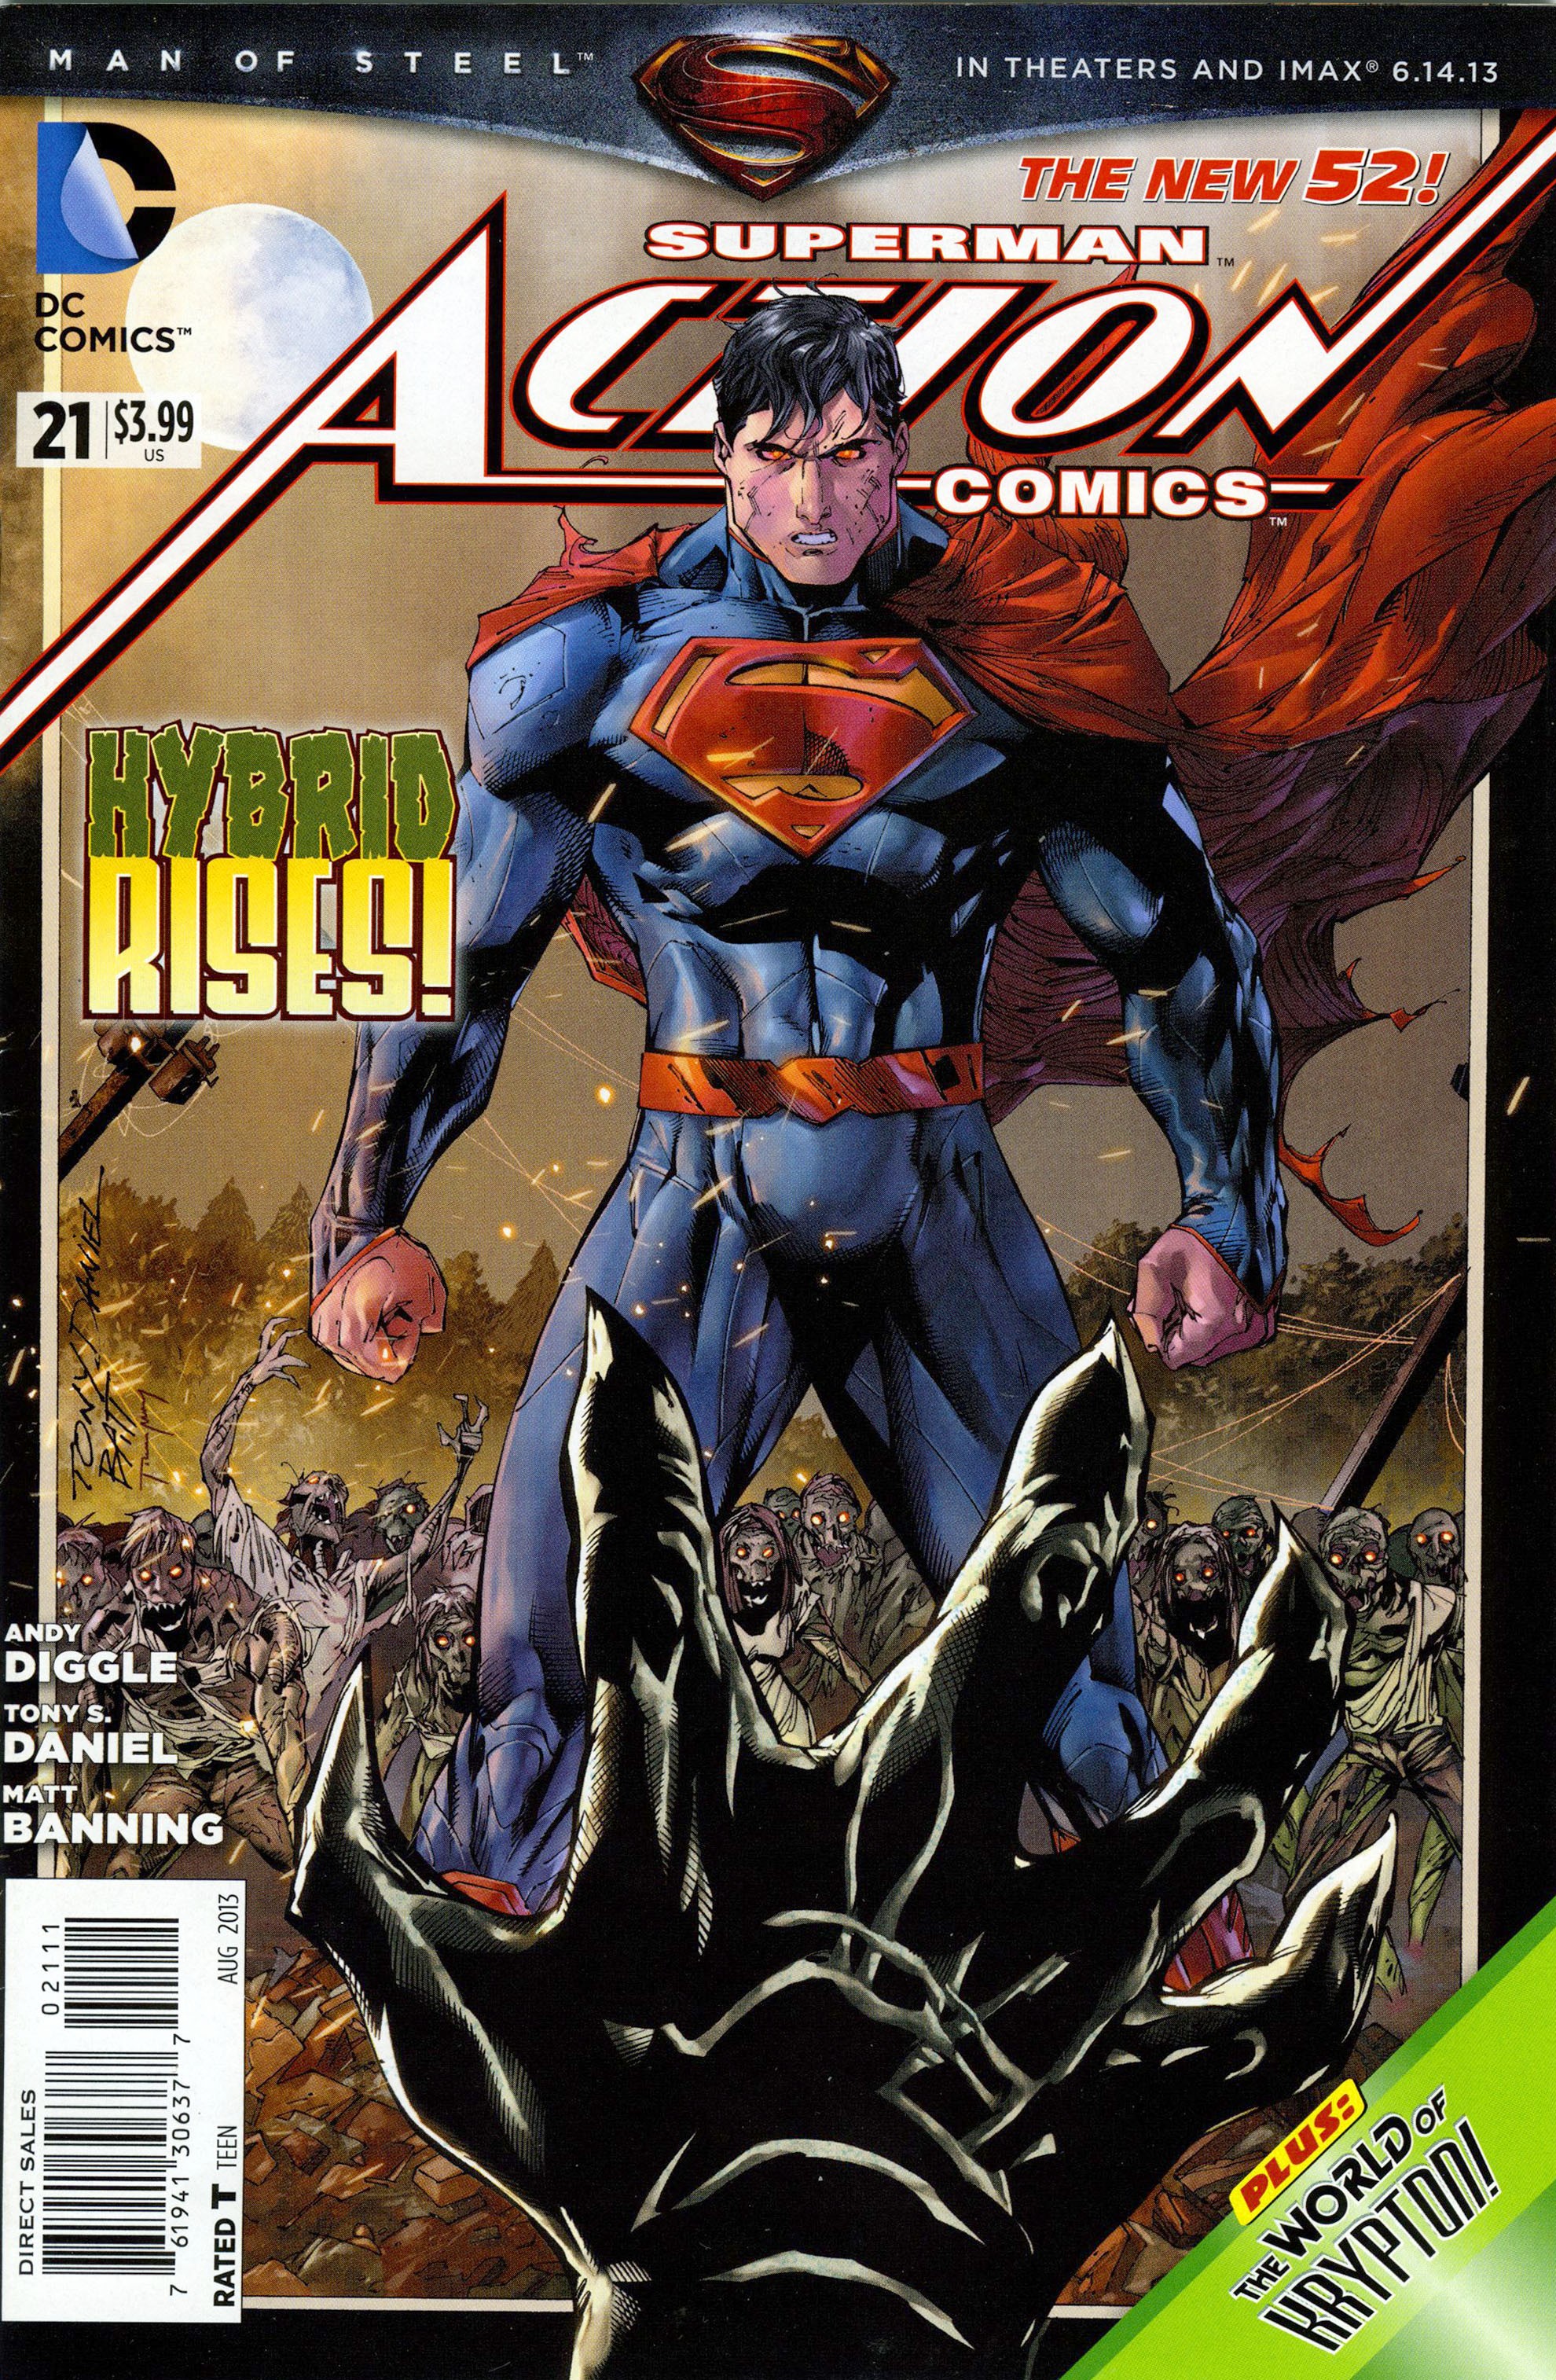 Action Comics Vol. 2 #21